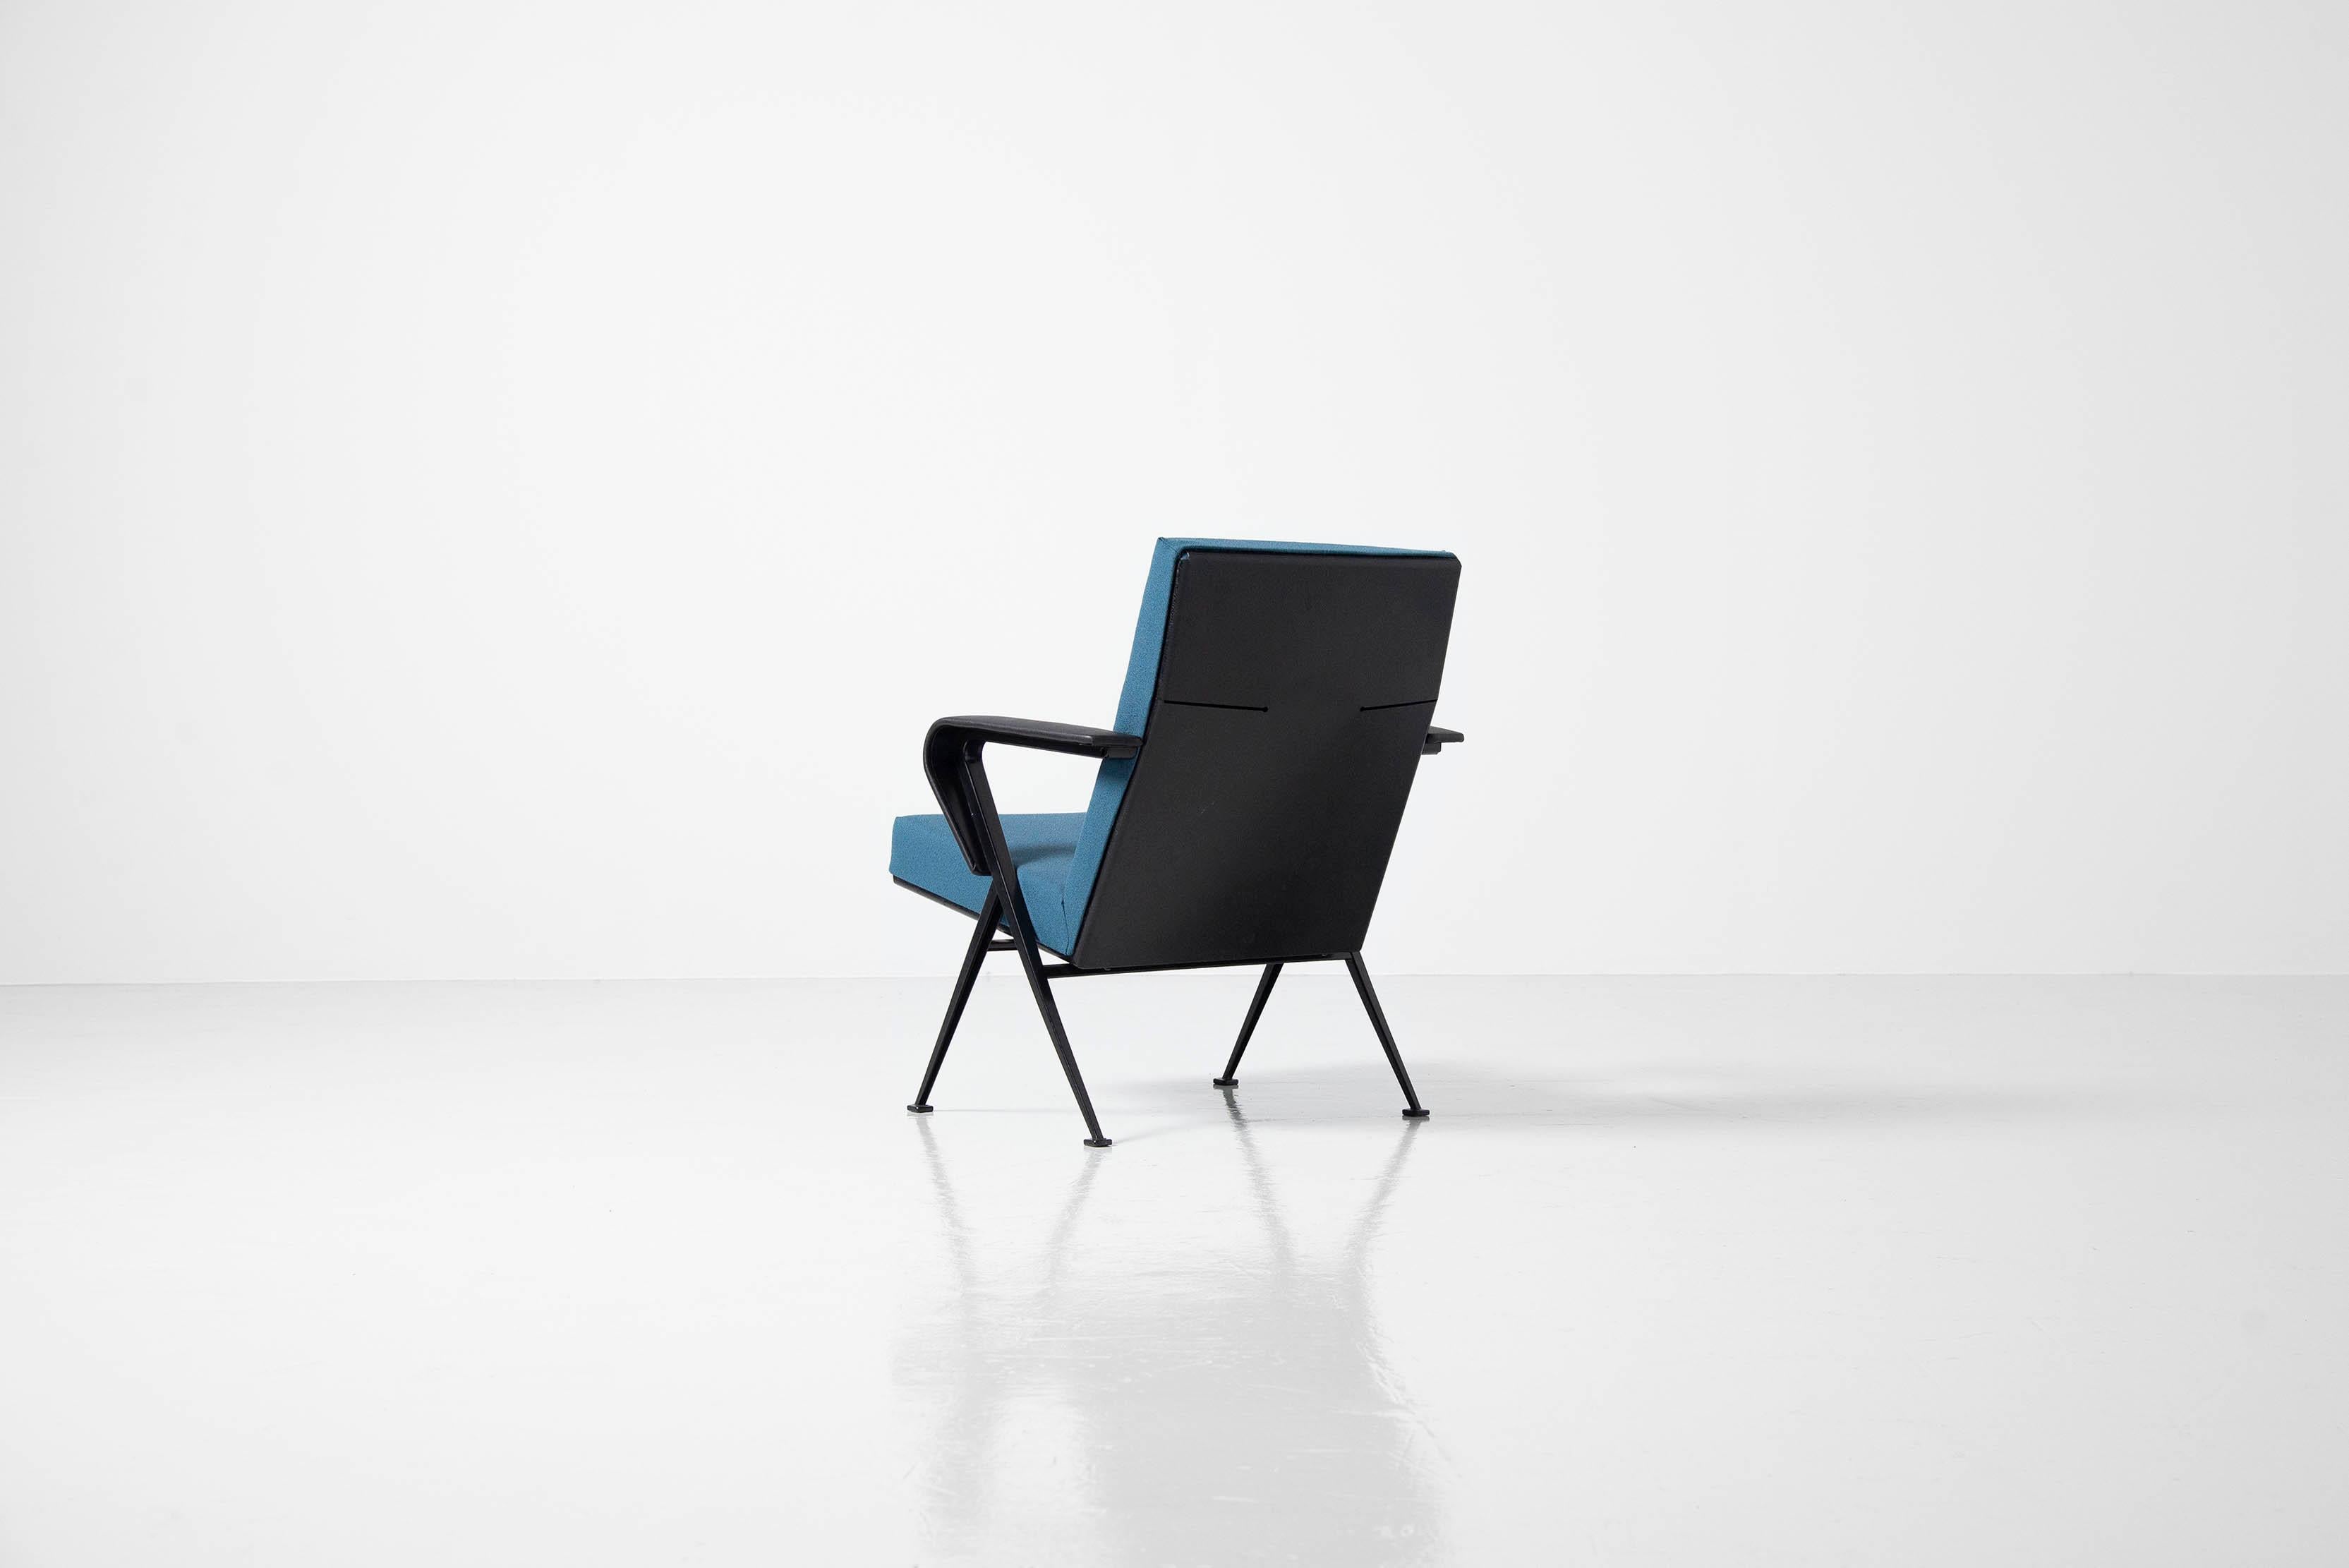 Joli fauteuil industriel 'Repose' conçu par Friso Kramer et fabriqué par Ahrend de Cirkel, Hollande 1959. La chaise a un très beau cadre en forme de compas avec une structure métallique, très similaire au design de la chaise visiteur de Jean Prouvé.